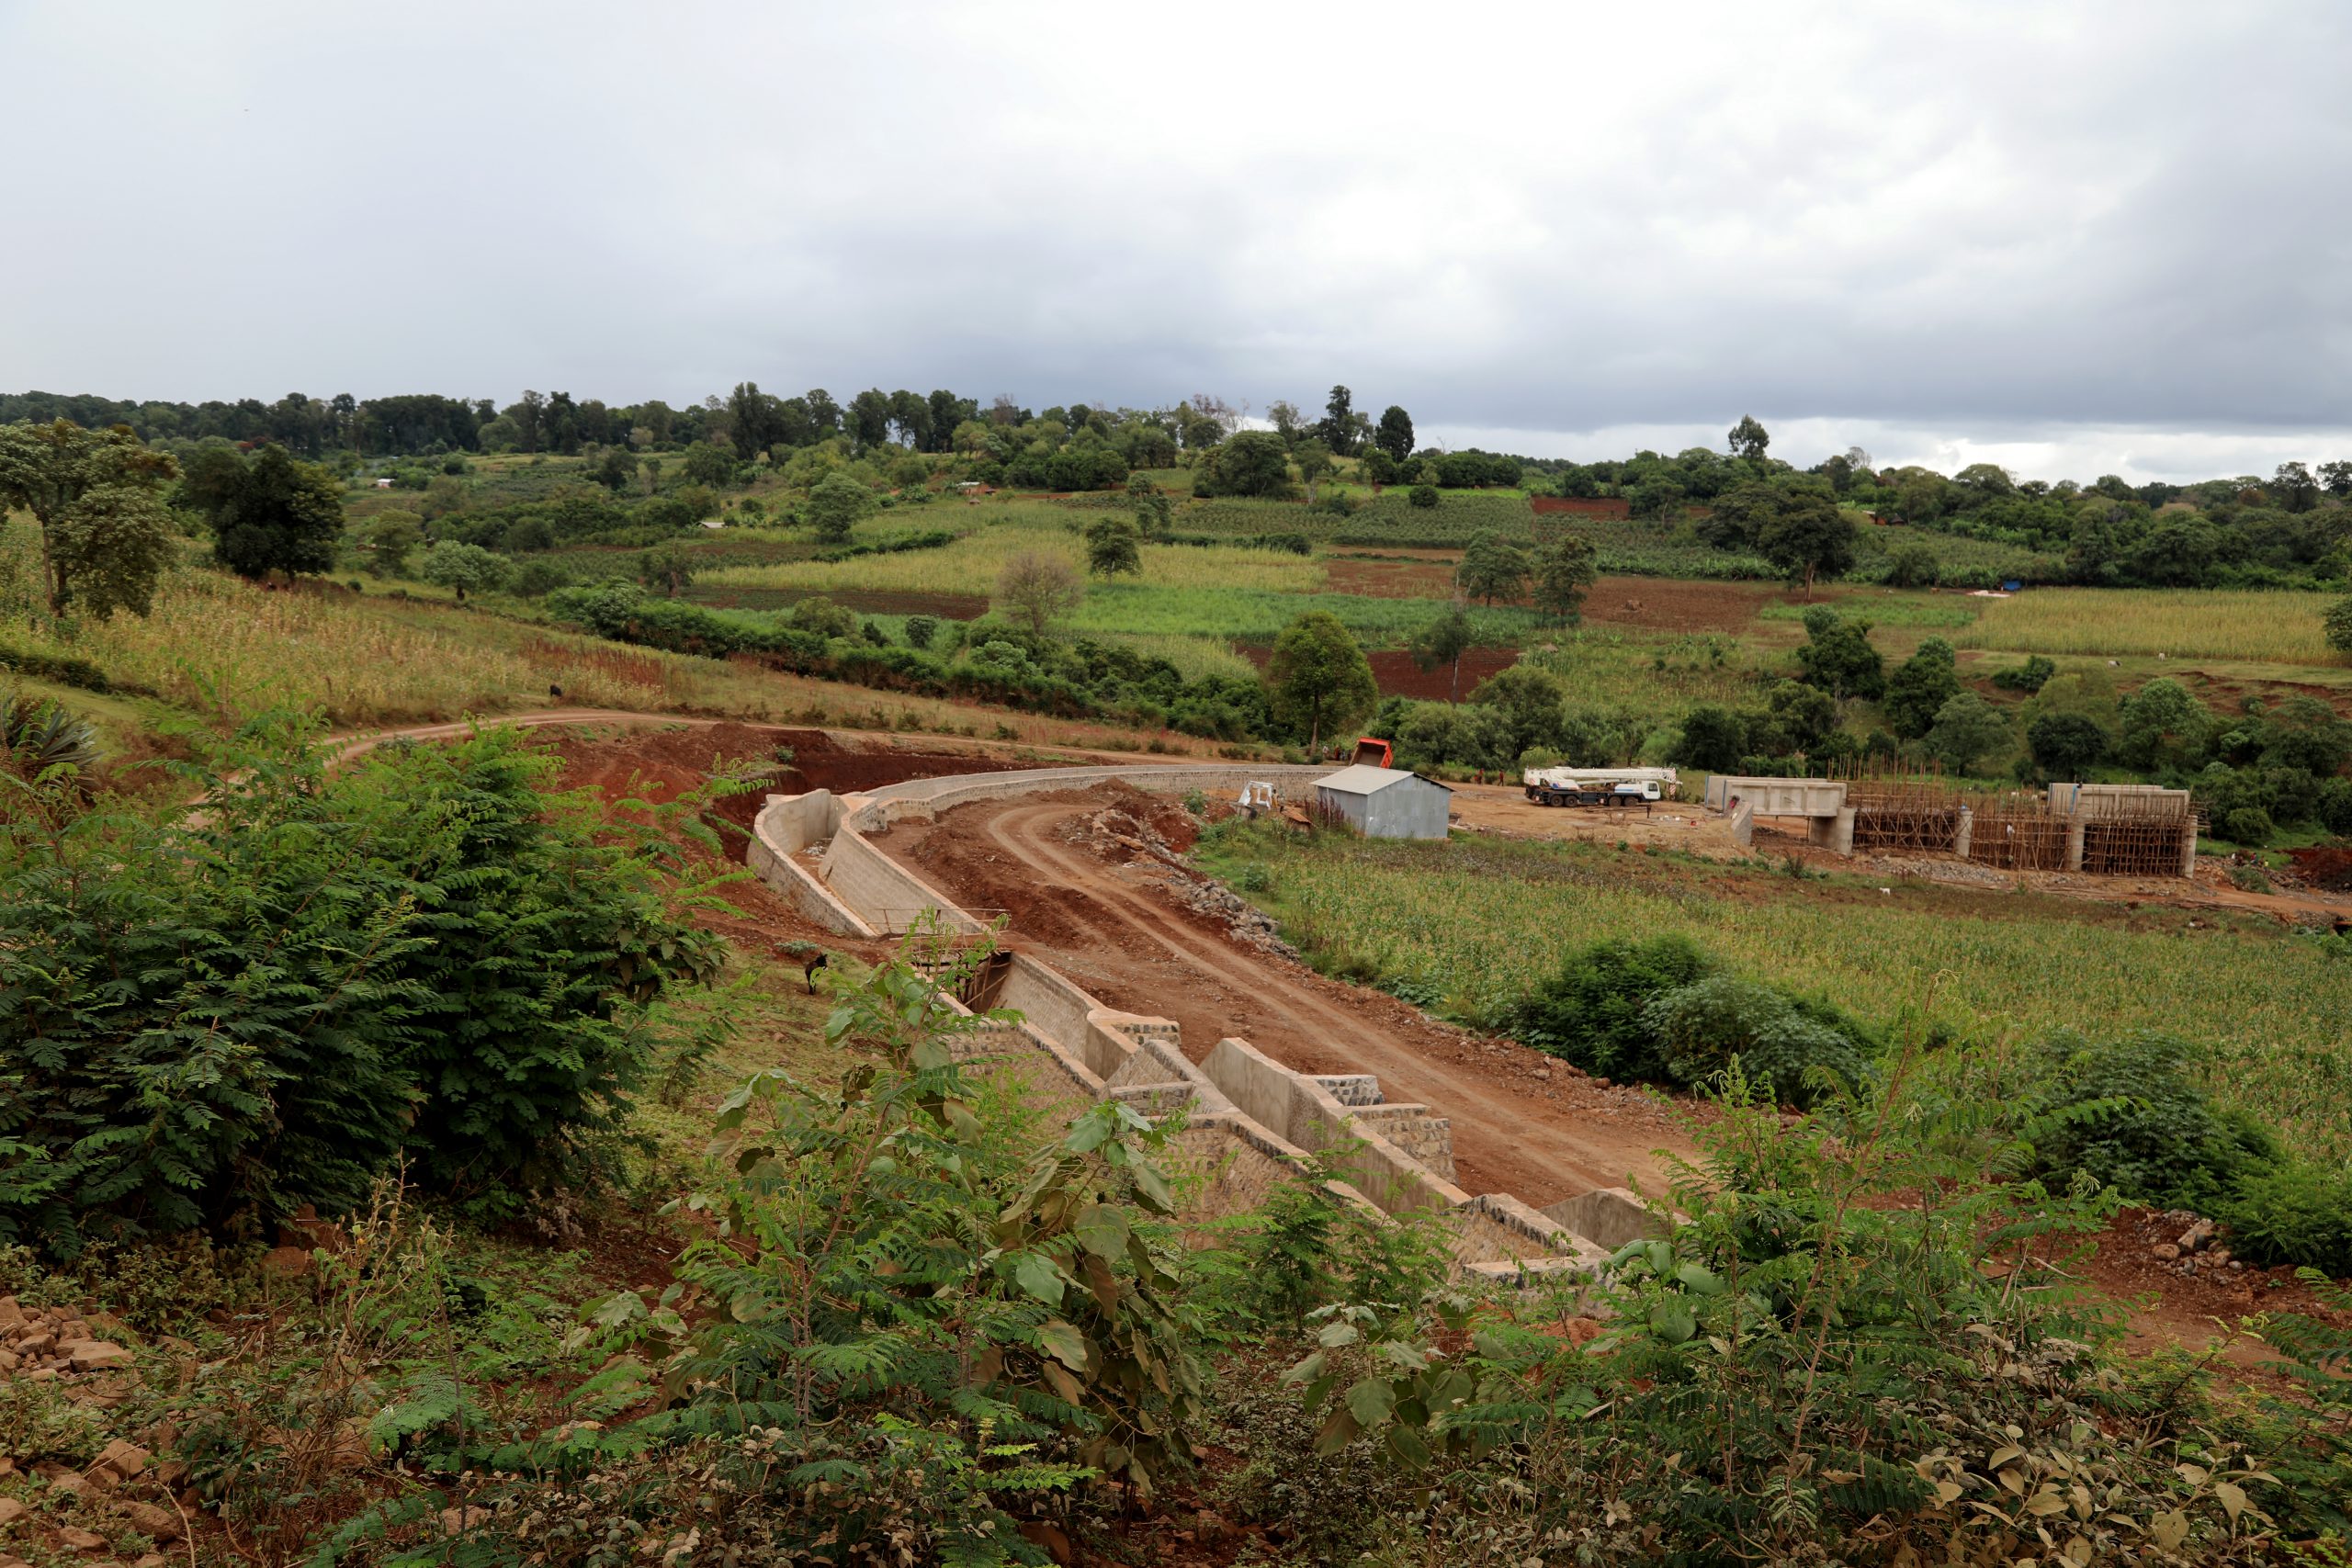 Welmel Irrigation Development project